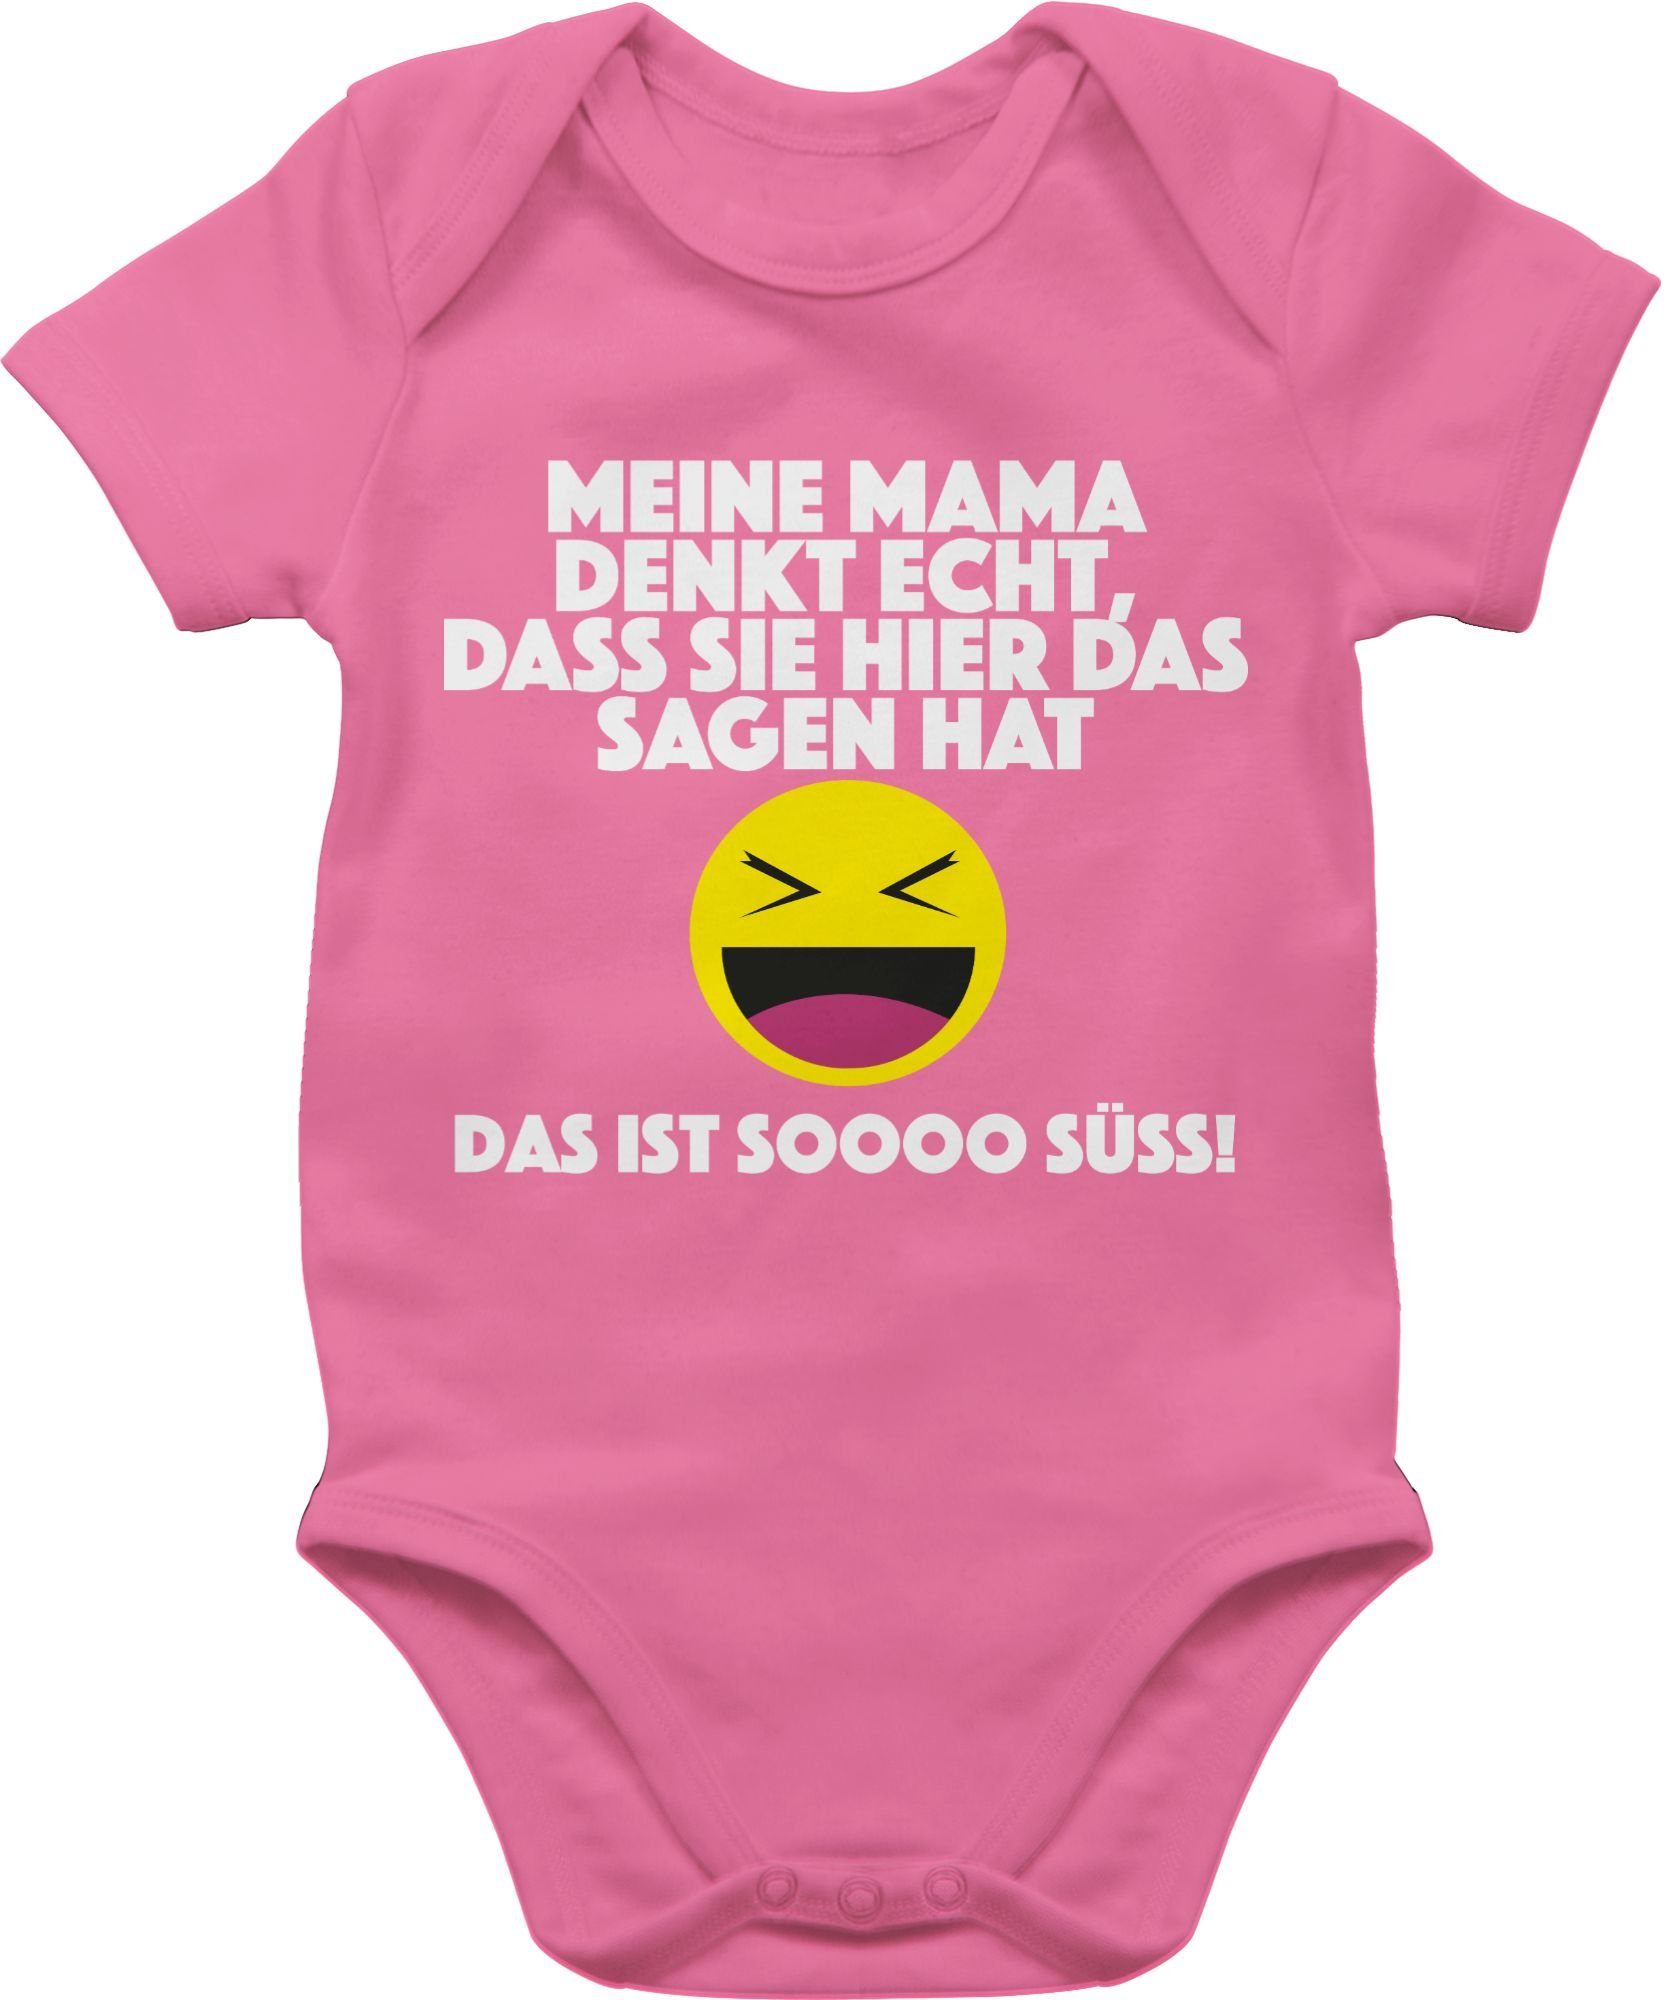 denkt hier 3 Pink Emoticon Shirtbody Mama Shirtracer sagen Das echt, sie dass das Meine ist Sprüche Baby - hat.